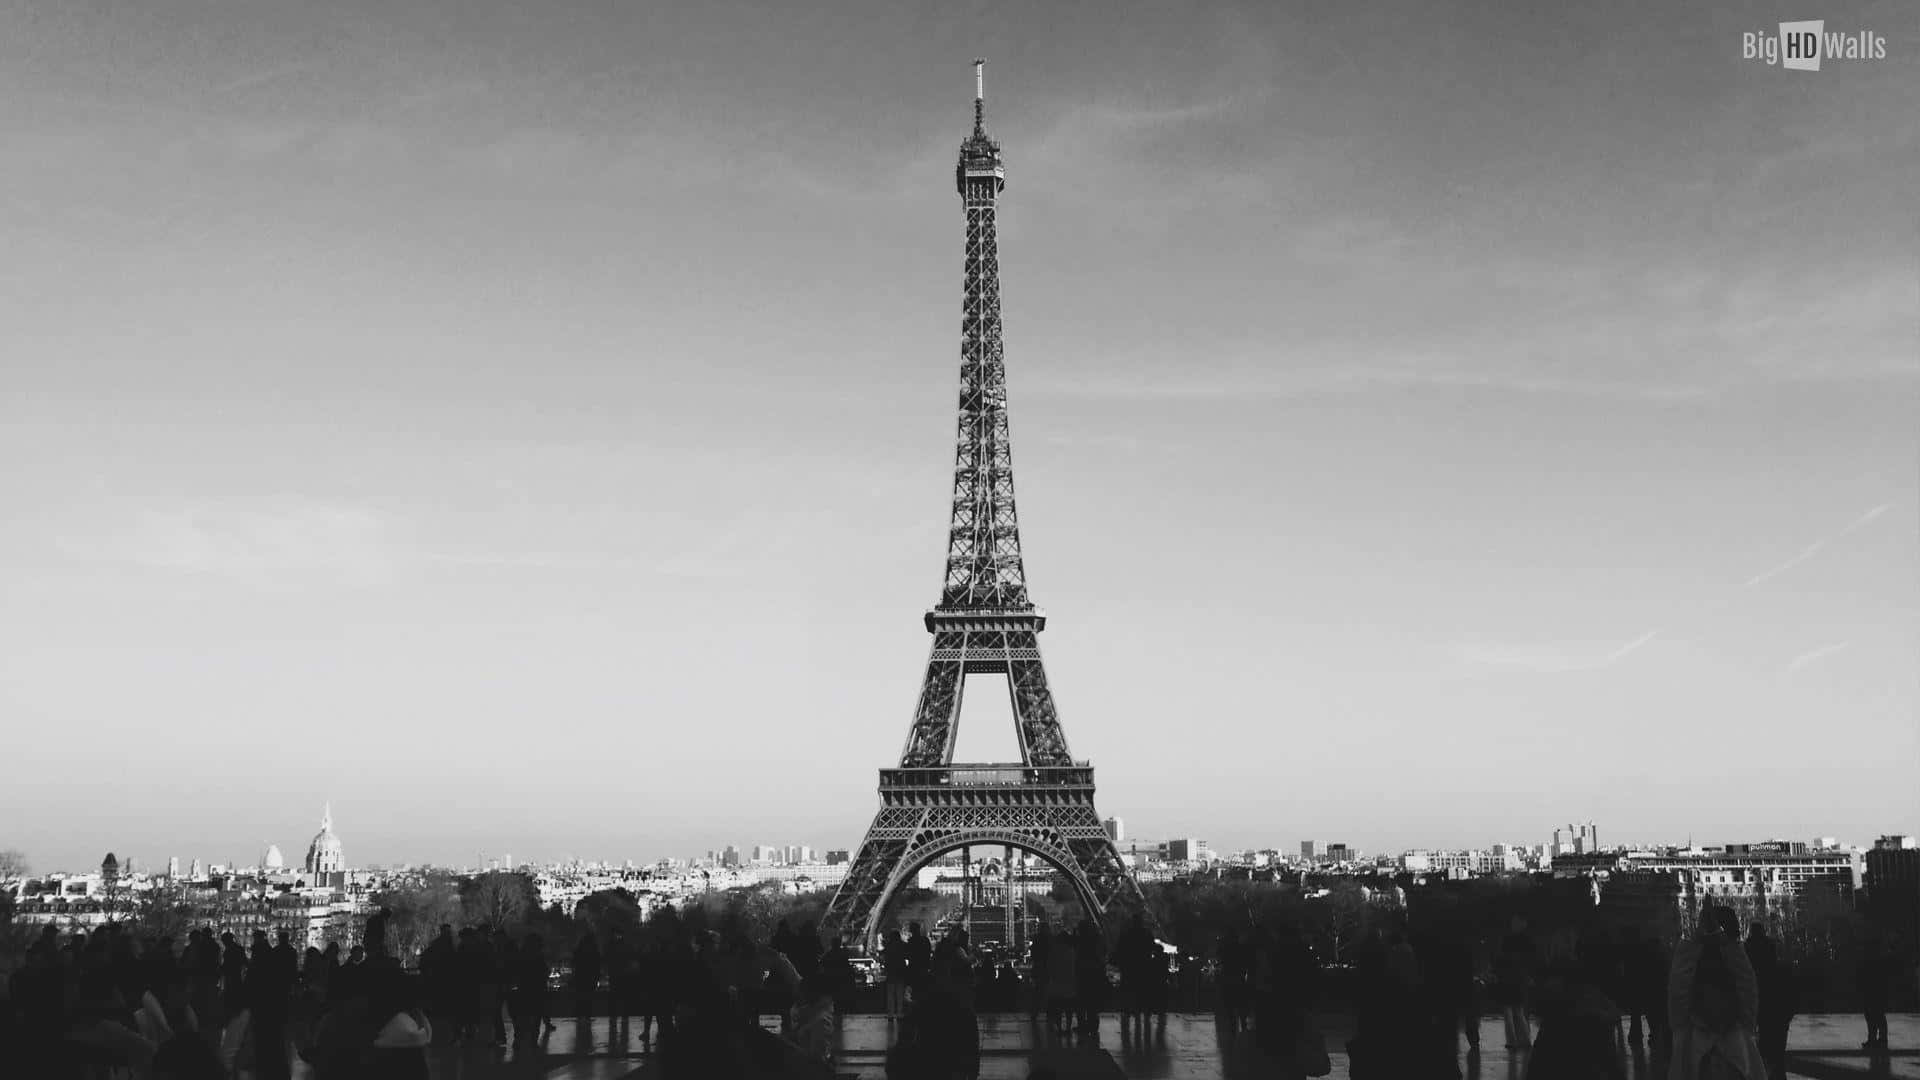 L'iconicatorre Eiffel Nel Cuore Di Parigi, Francia.